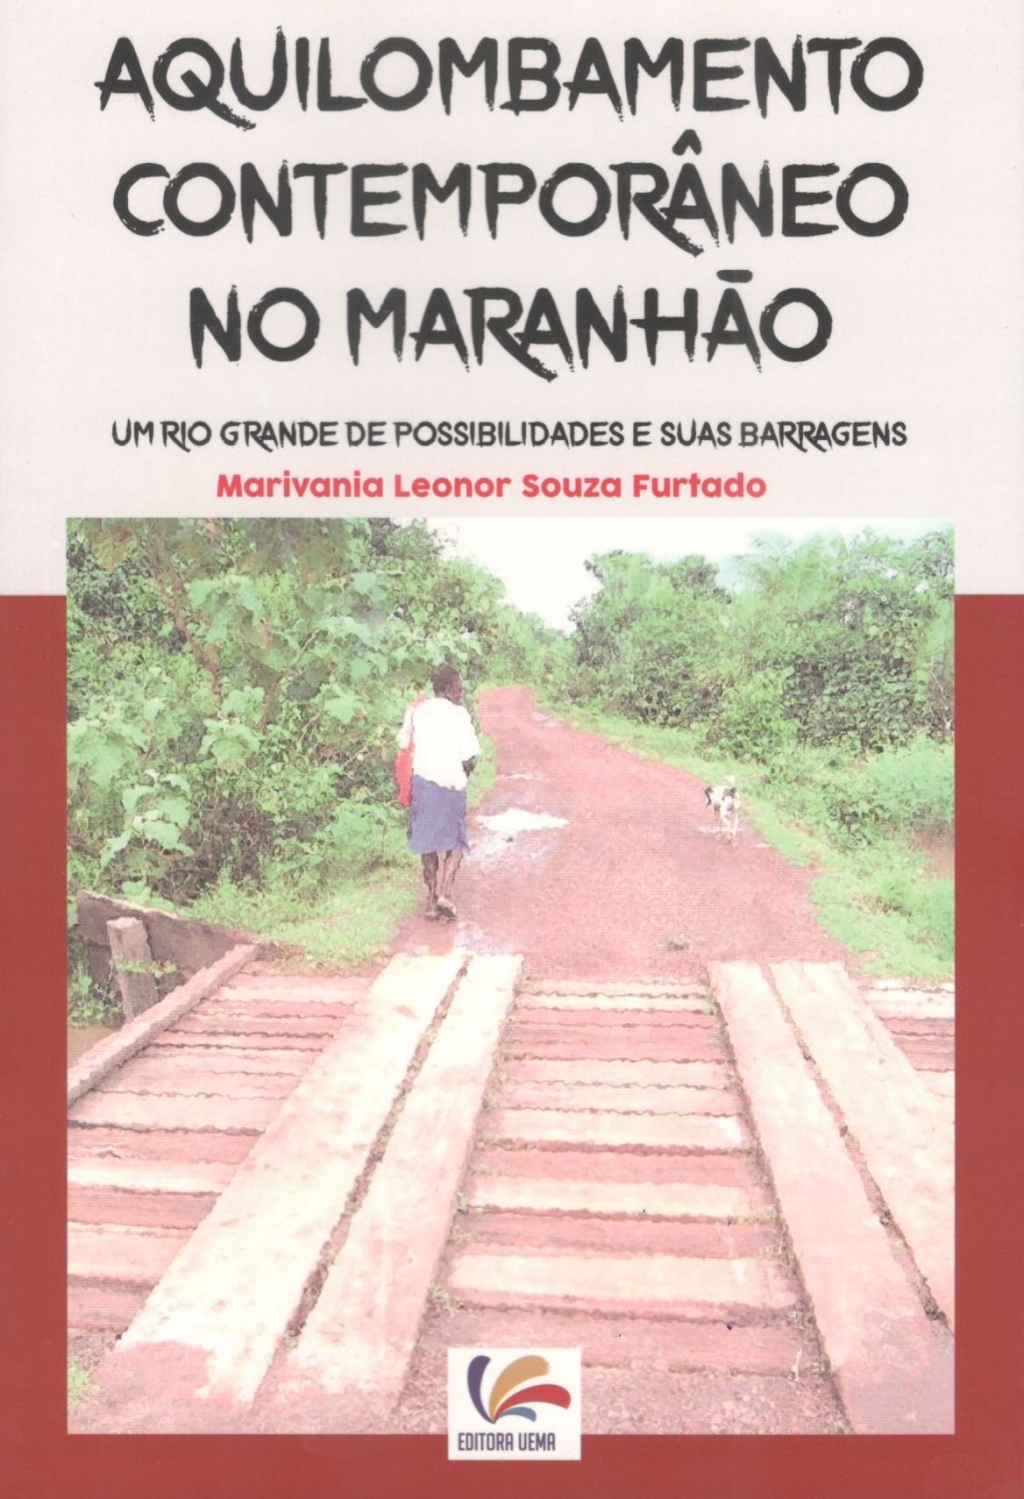 Aquilombamento Contemporâneo no Maranhão: um rio grande de possibilidades e suas barragens